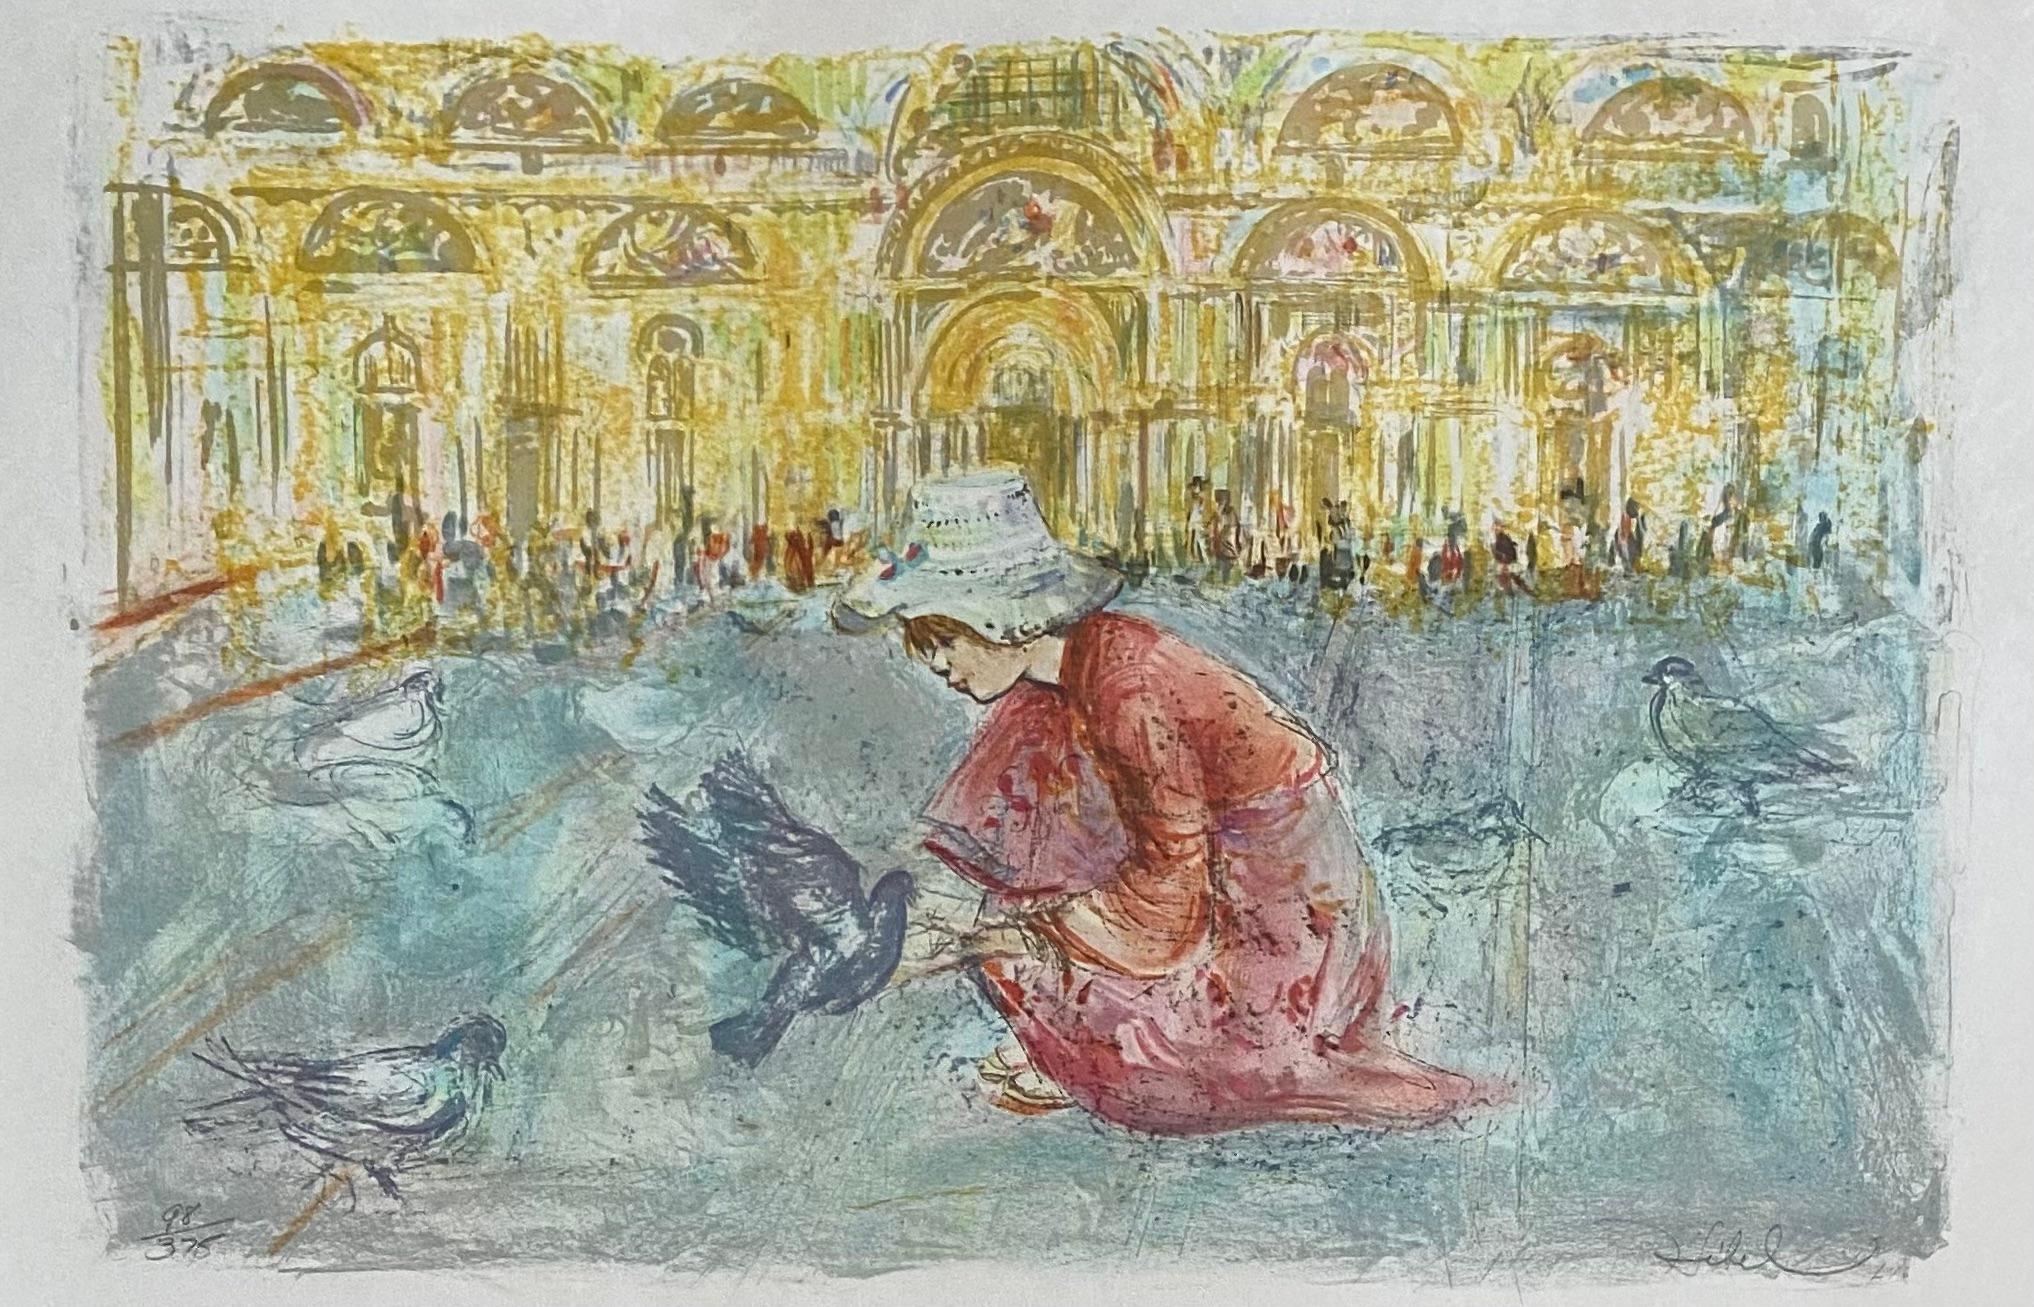 Litografía en color de Edna Hibel que representa la Plaza de San Marcos en Venecia, Italia. Firmado y numerado. 

Una obra de arte muy decorativa de la artista postimpresionista cotizada Edna Hibel. 
Esta hermosa obra de arte realzará cualquier